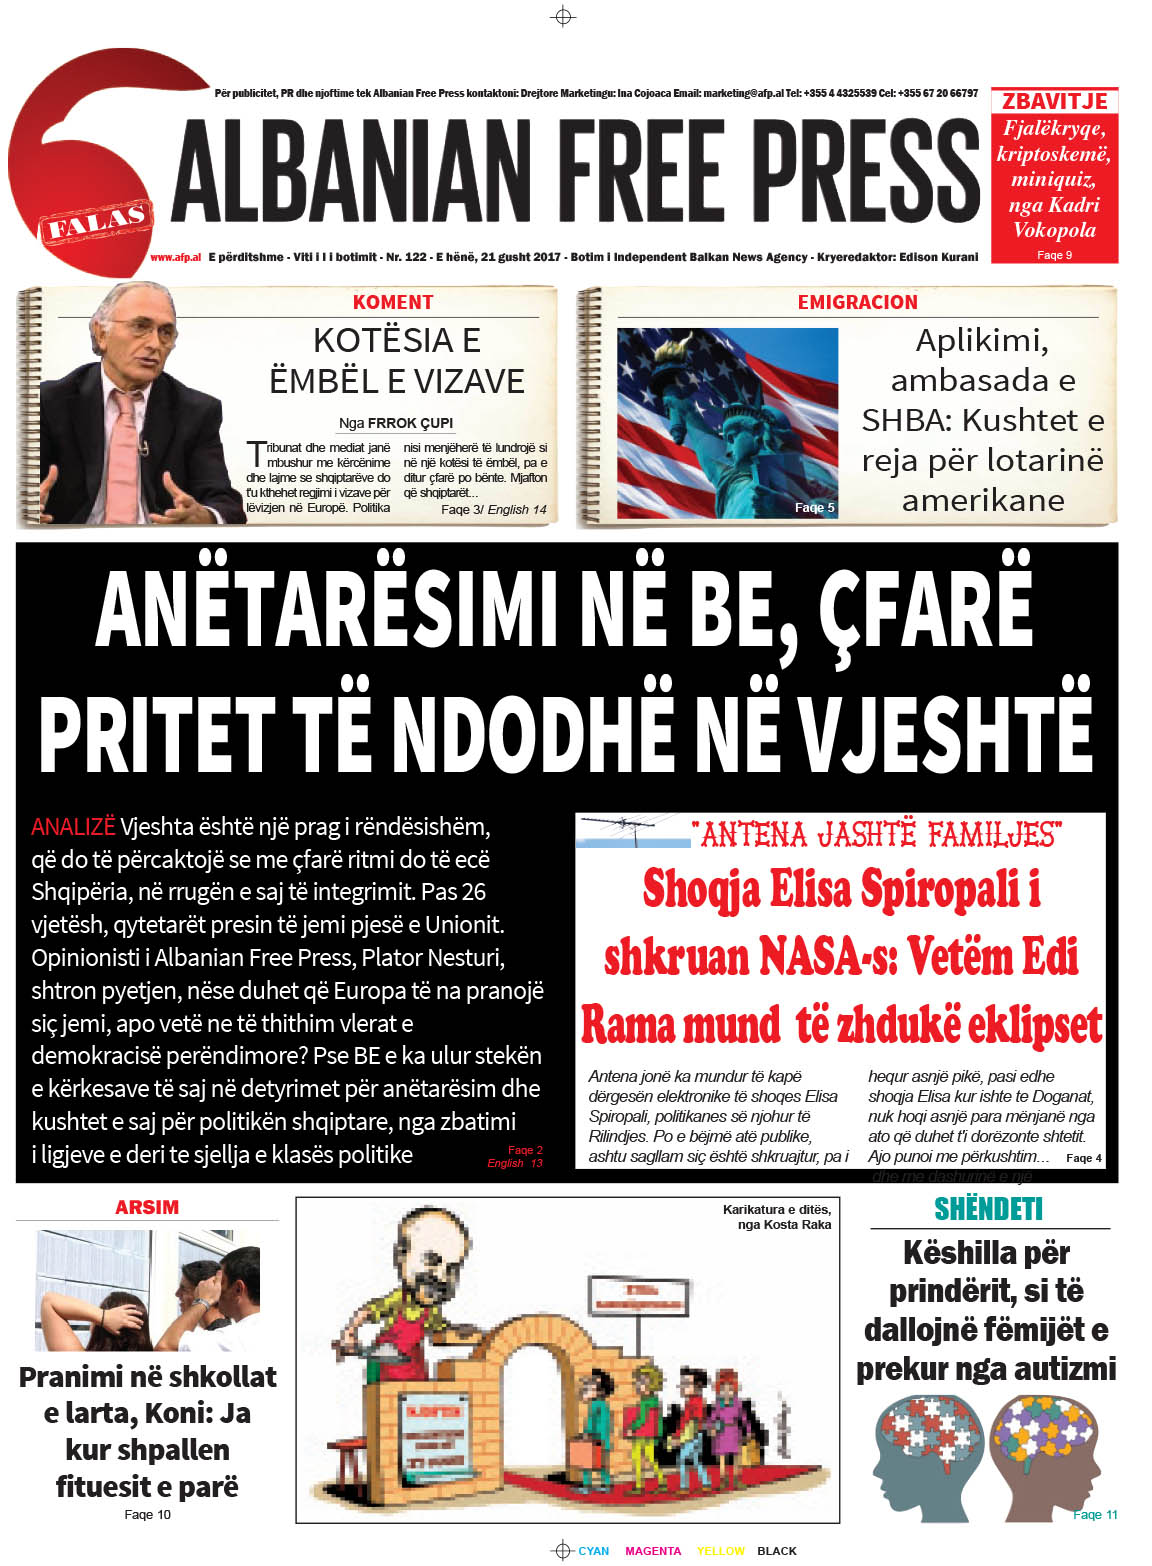 Lexoni sot 21 gusht 2017 në gazetën e përditshme “Albanian Free Press”